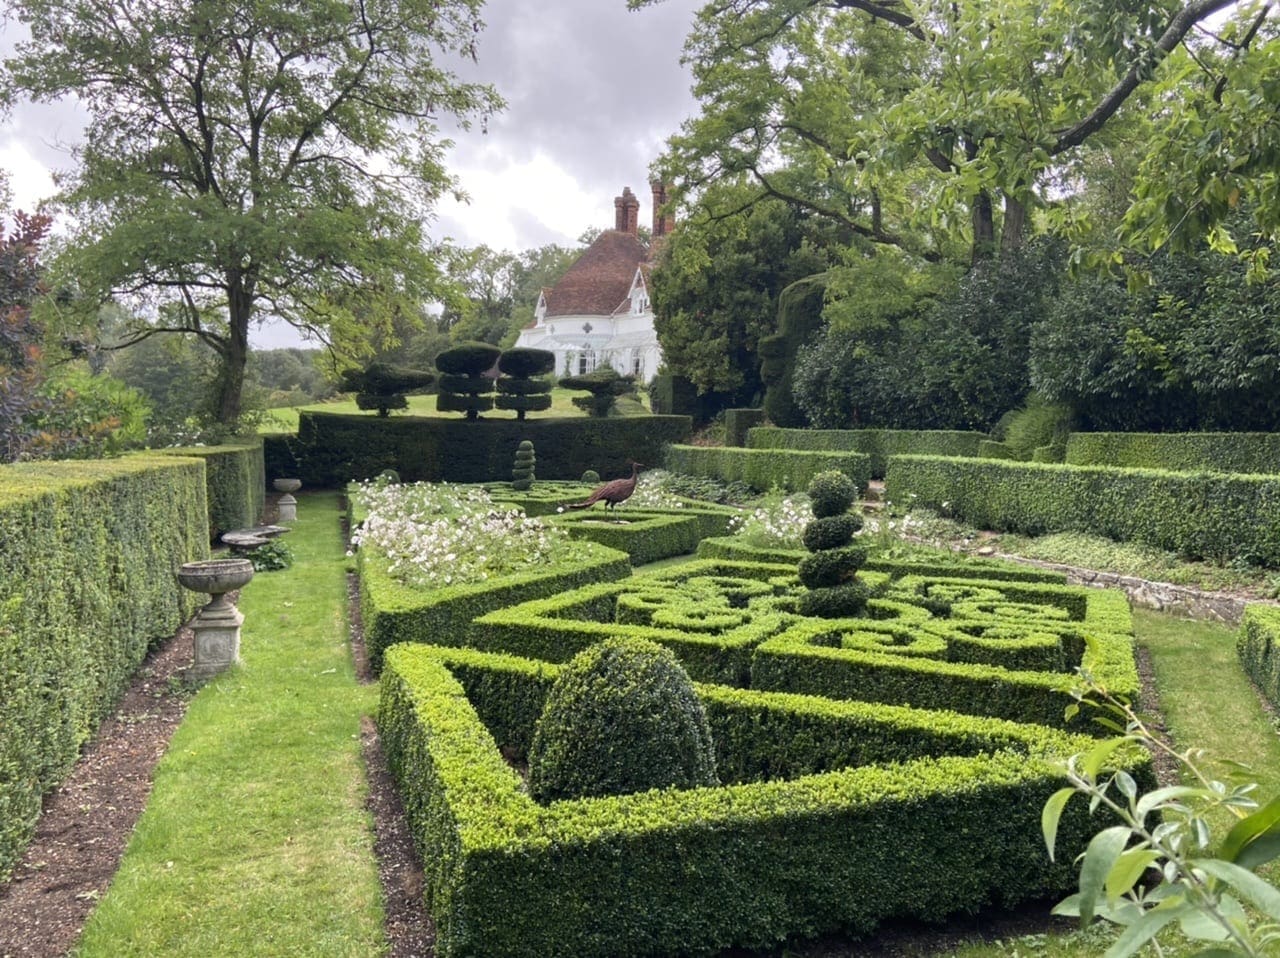 The Peacock Garden at Houghton Lodge